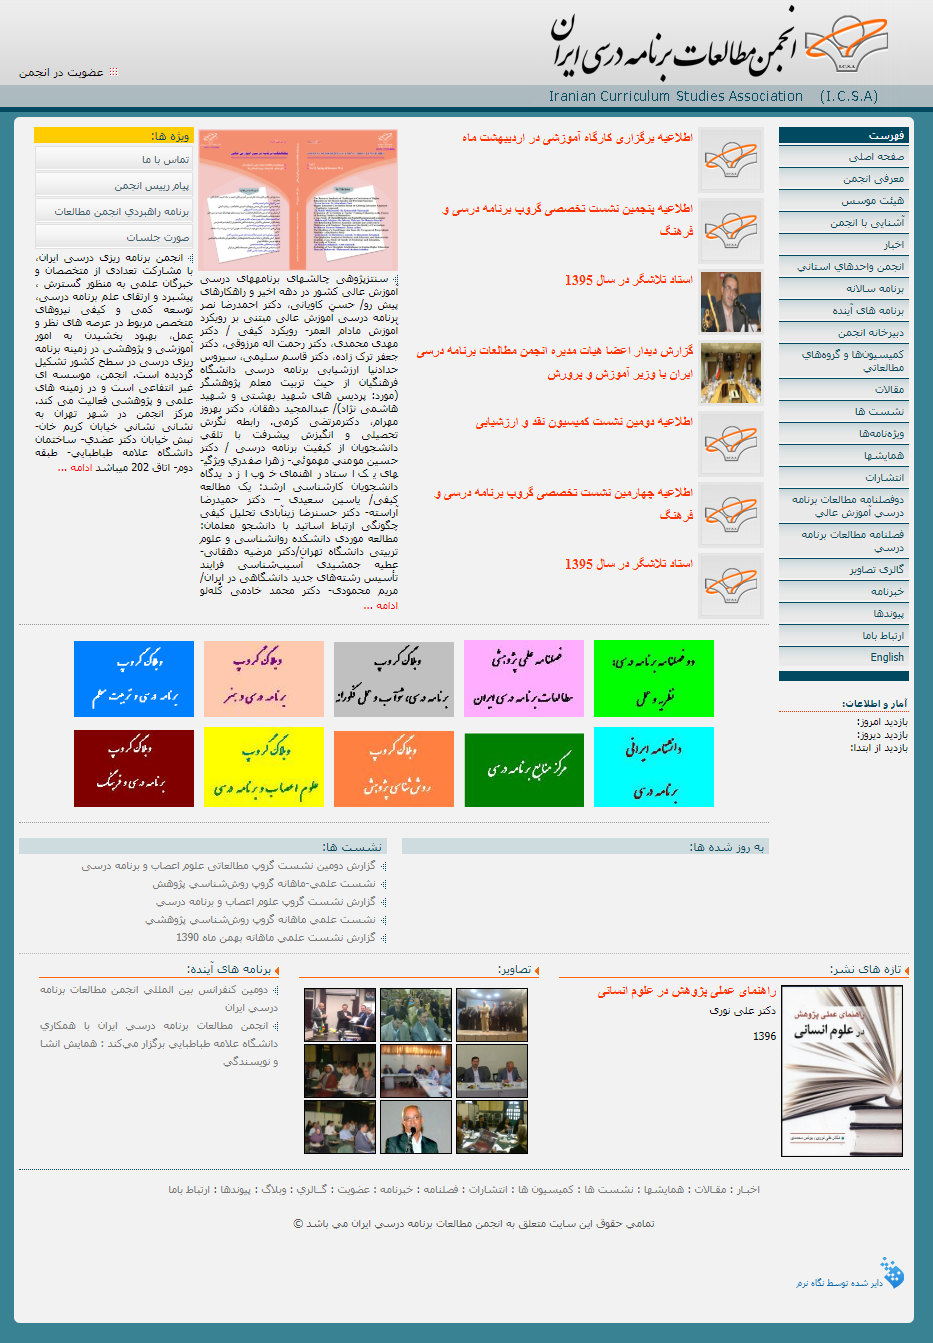 طراحی سایت انجمن مطالعات برنامه درسی ایران